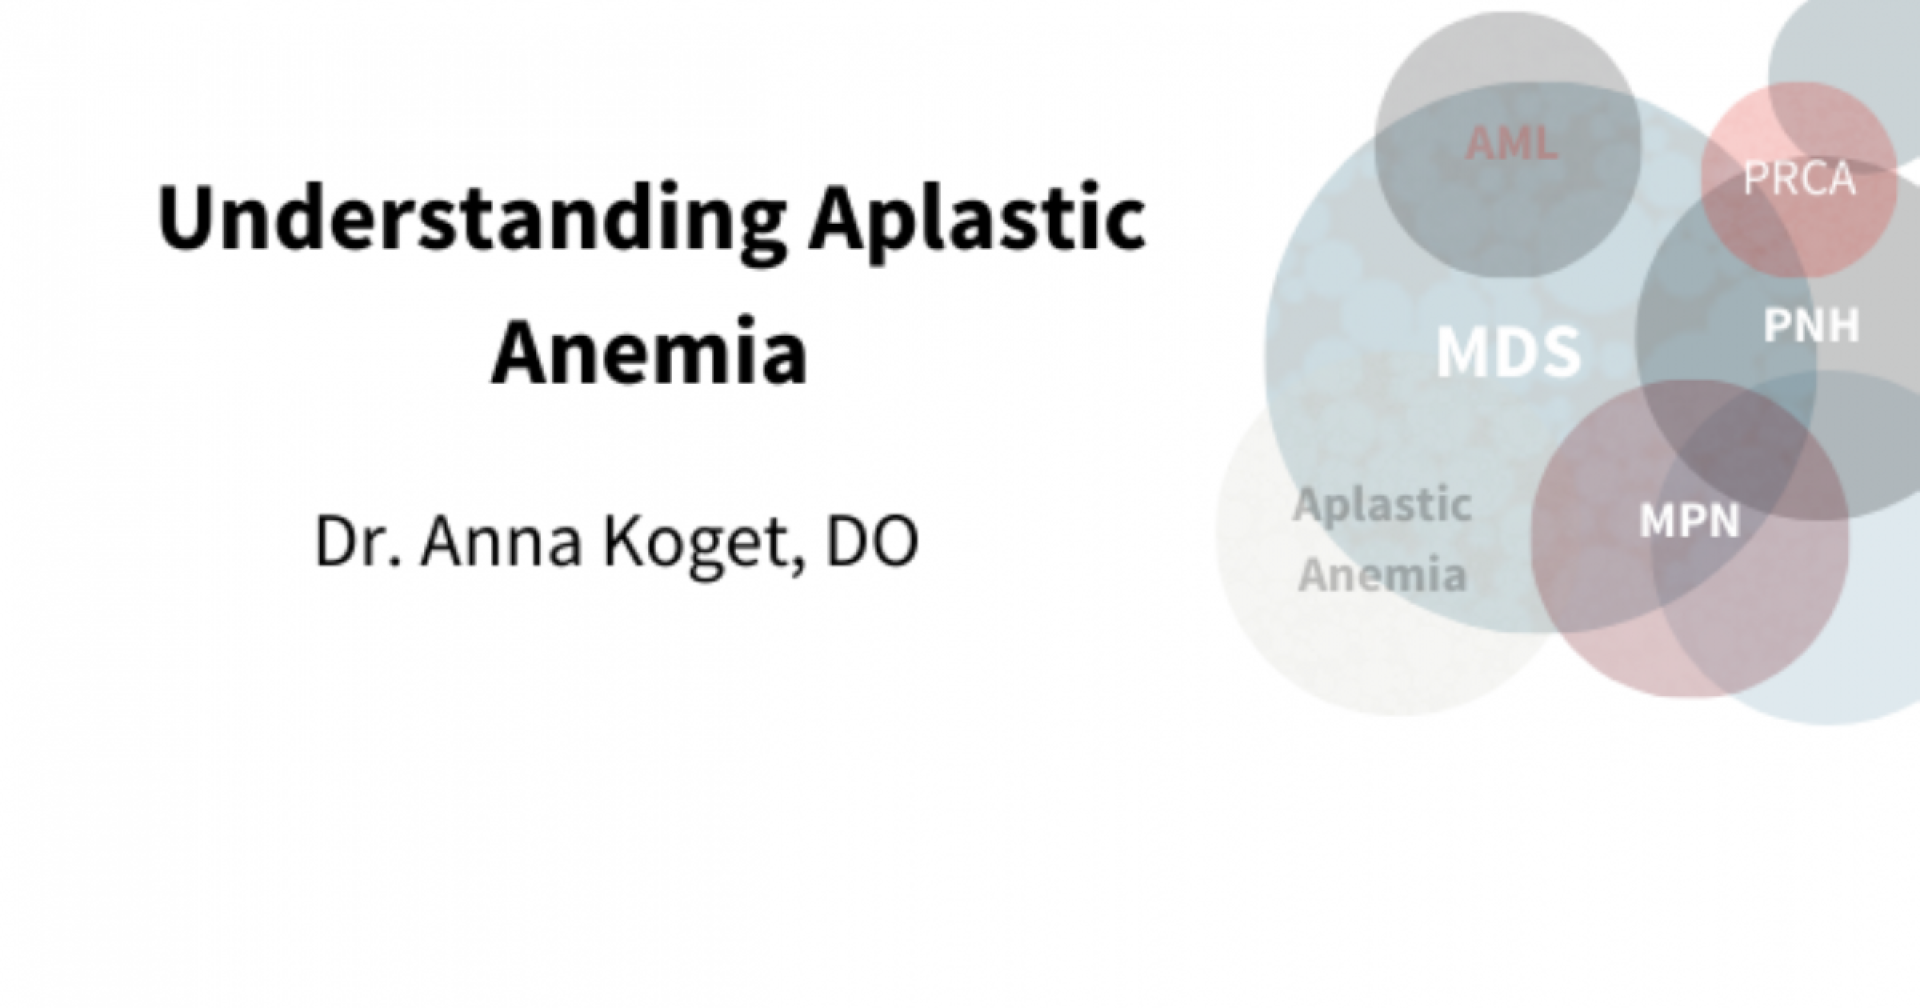 Understanding aplastic anemia